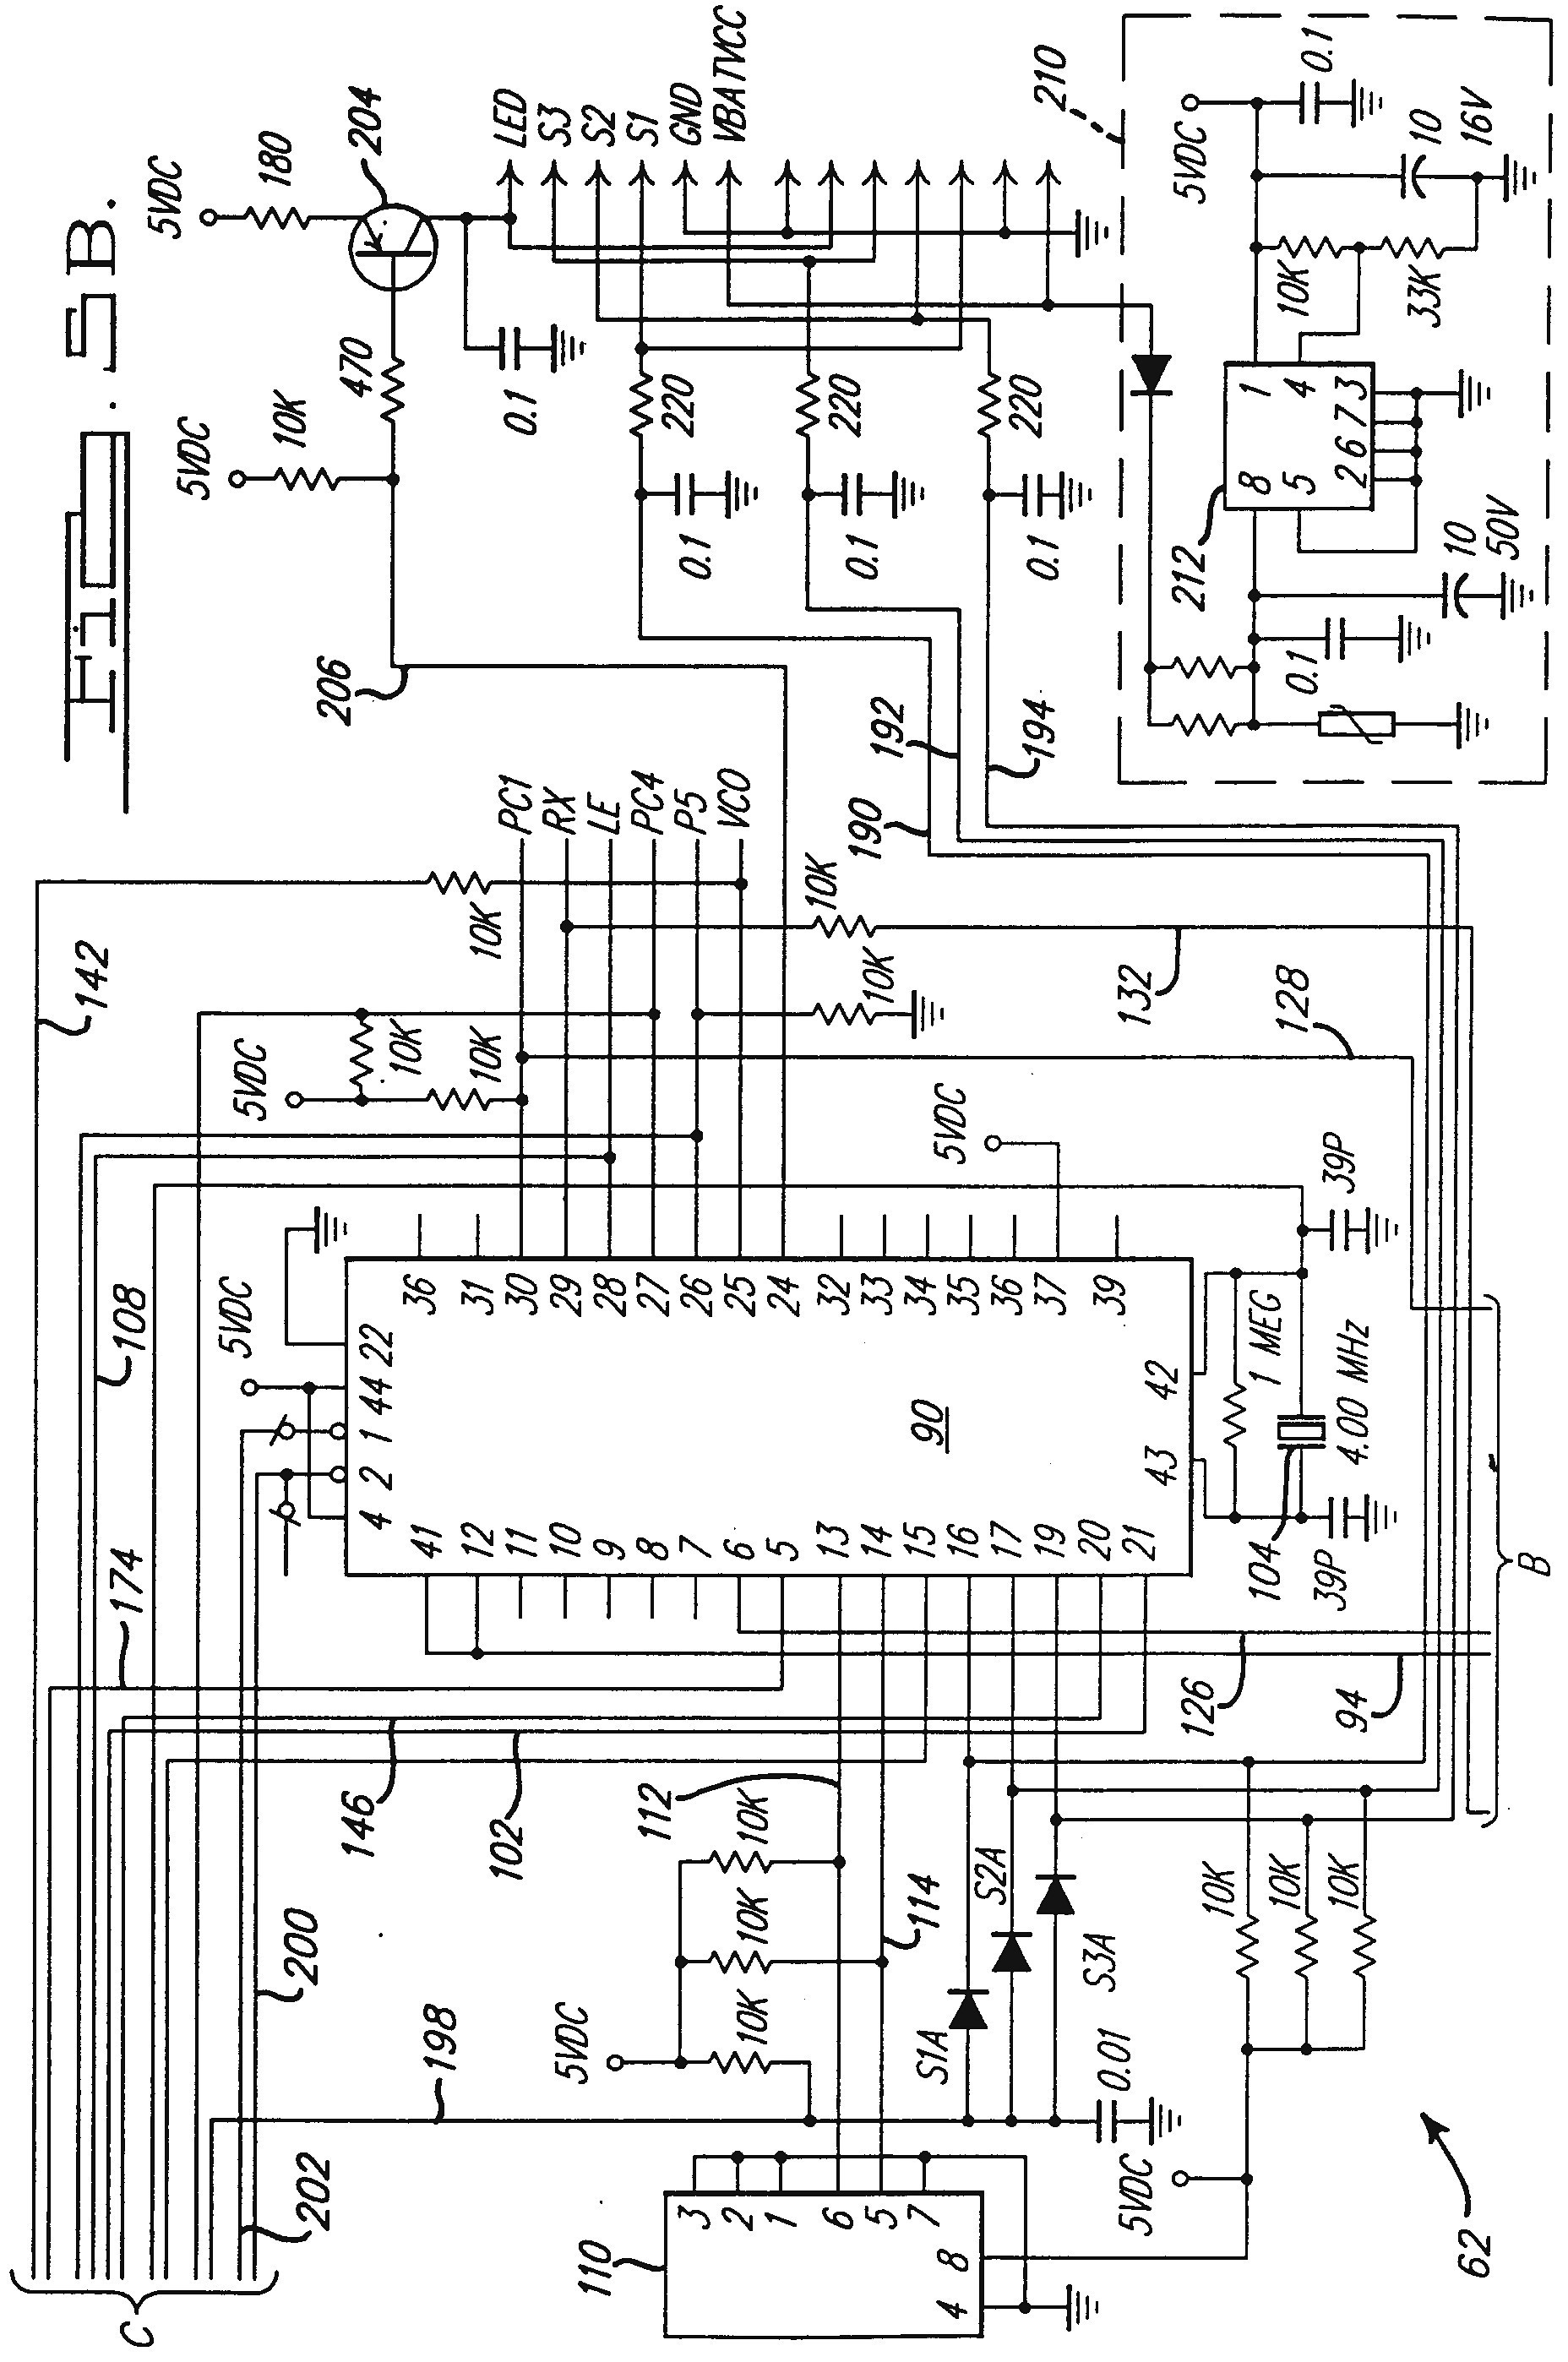 Wiring Diagram for Liftmaster Garage Door Opener Elegant How to Wire A Garage Diagram Diagram Of Wiring Diagram for Liftmaster Garage Door Opener